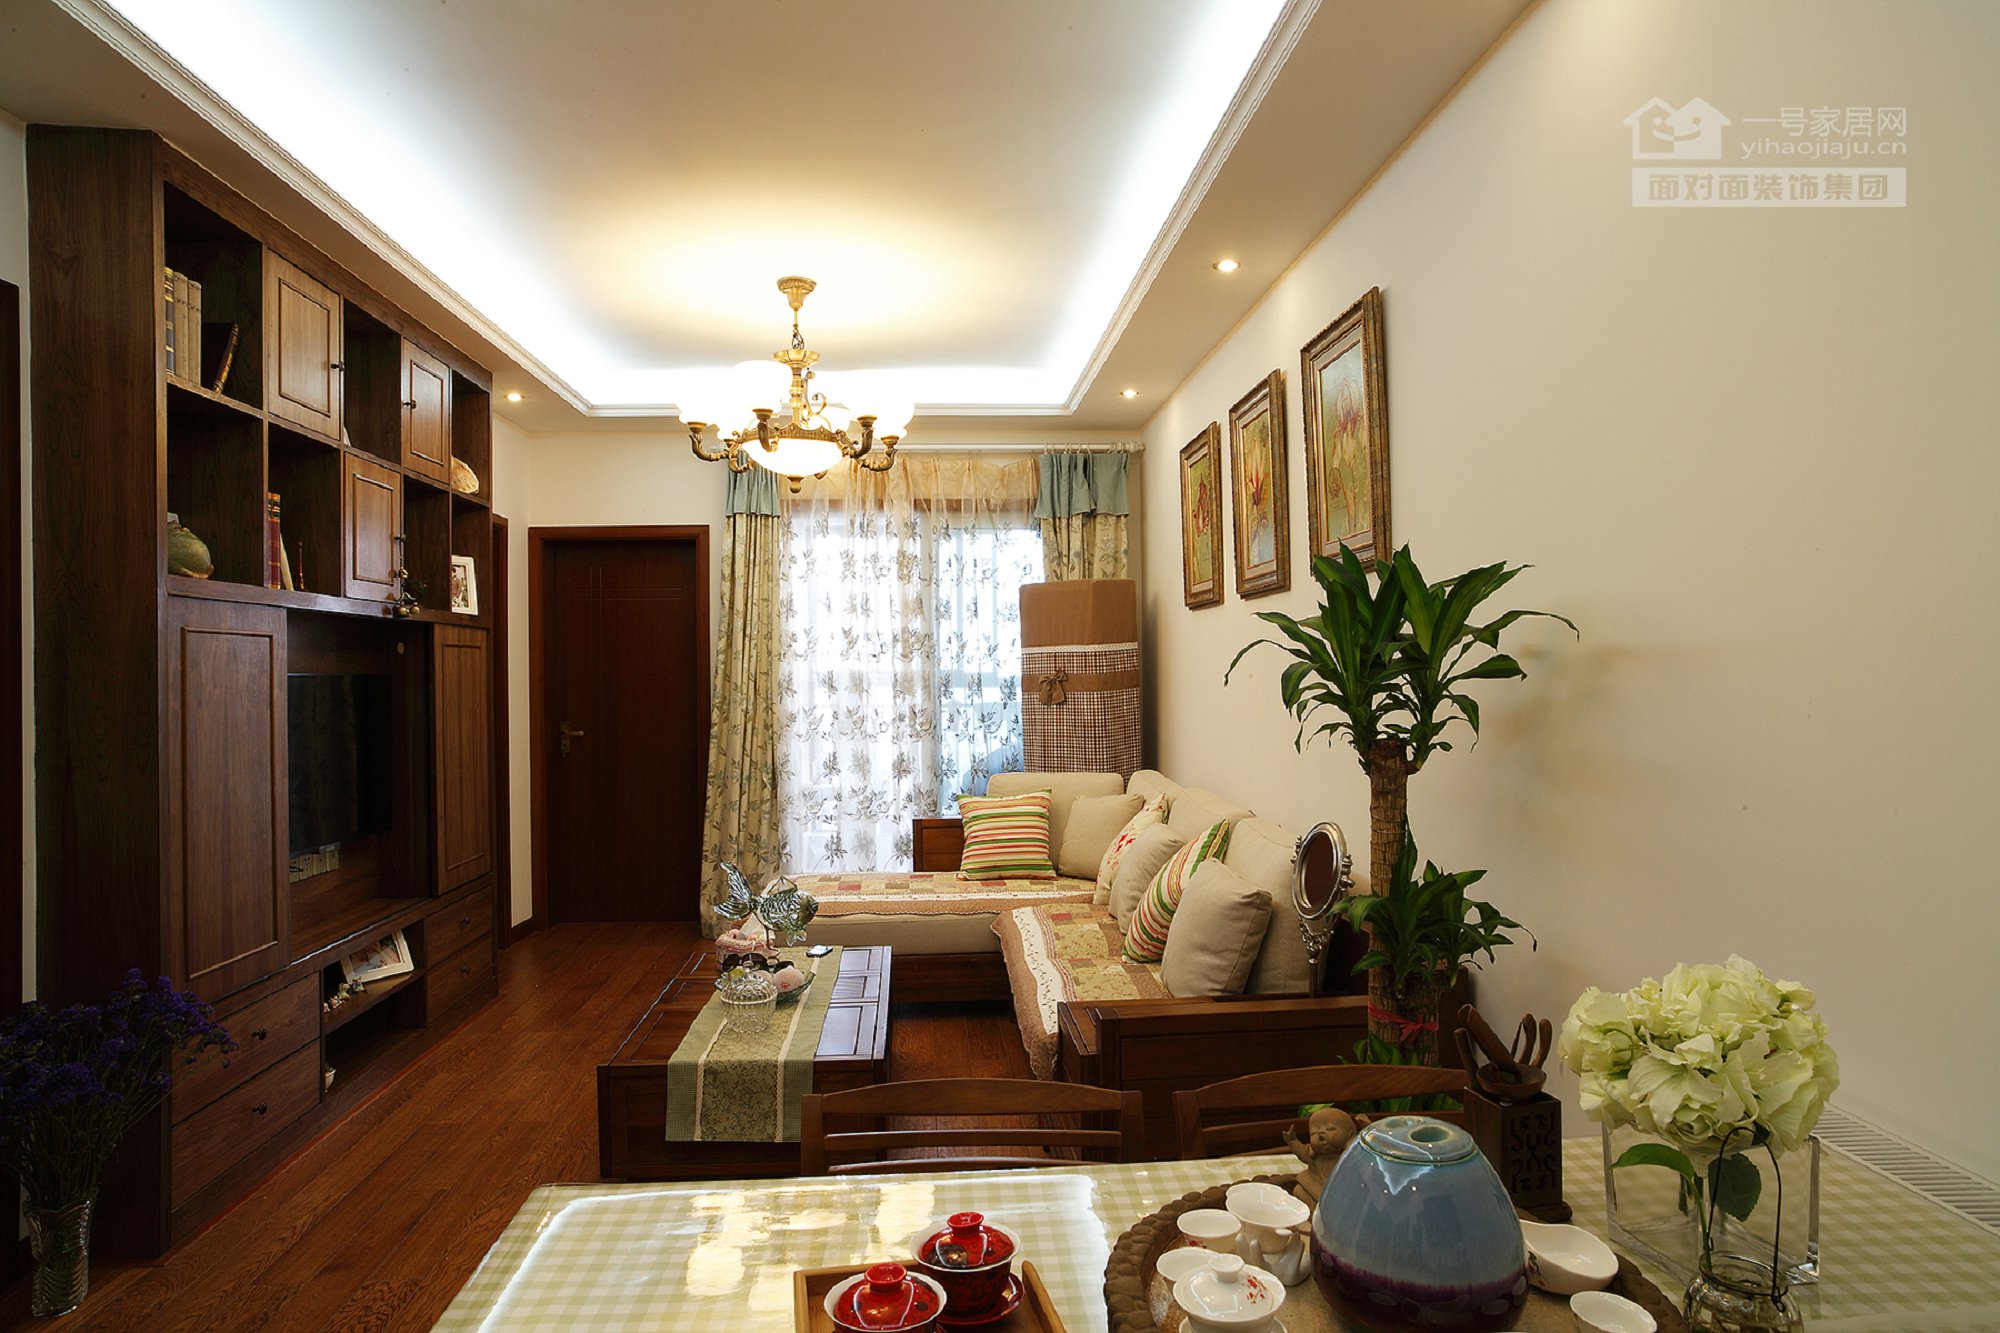 新中式混搭 一号家居网 客厅图片来自武汉一号家居在保利心语  68平米新中式混搭风格的分享